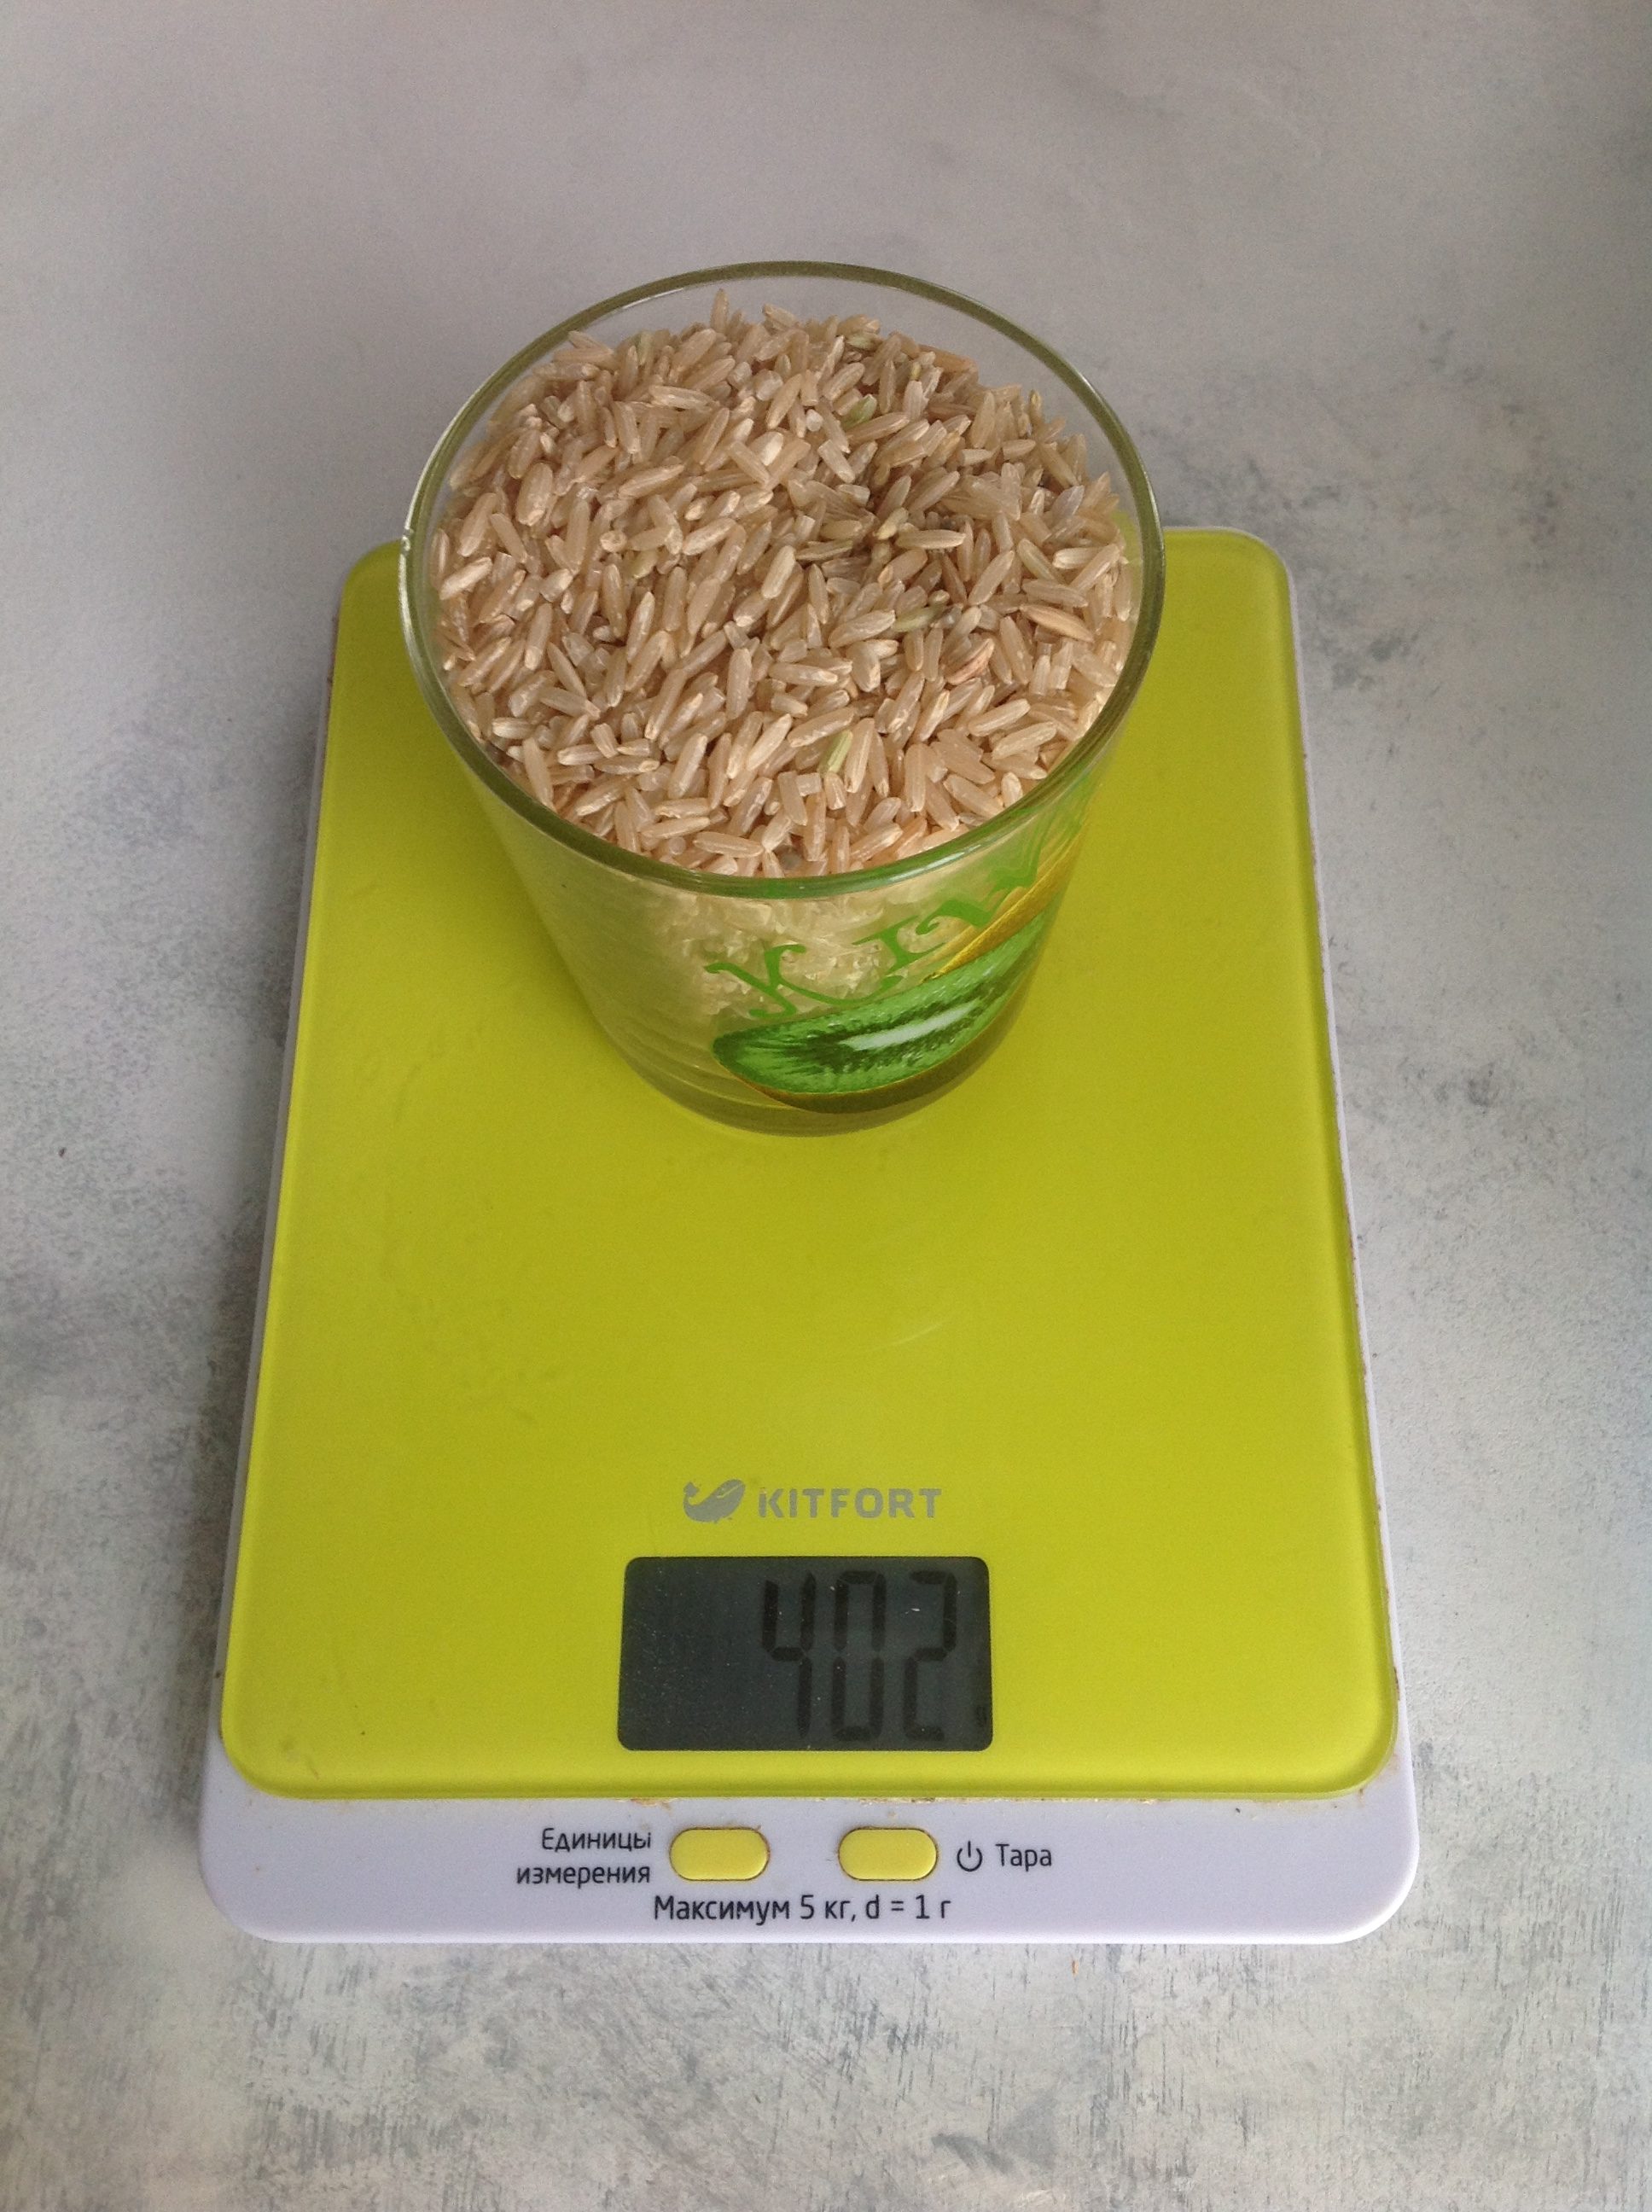 Koľko váži hnedá suchá ryža v 250 ml pohári?